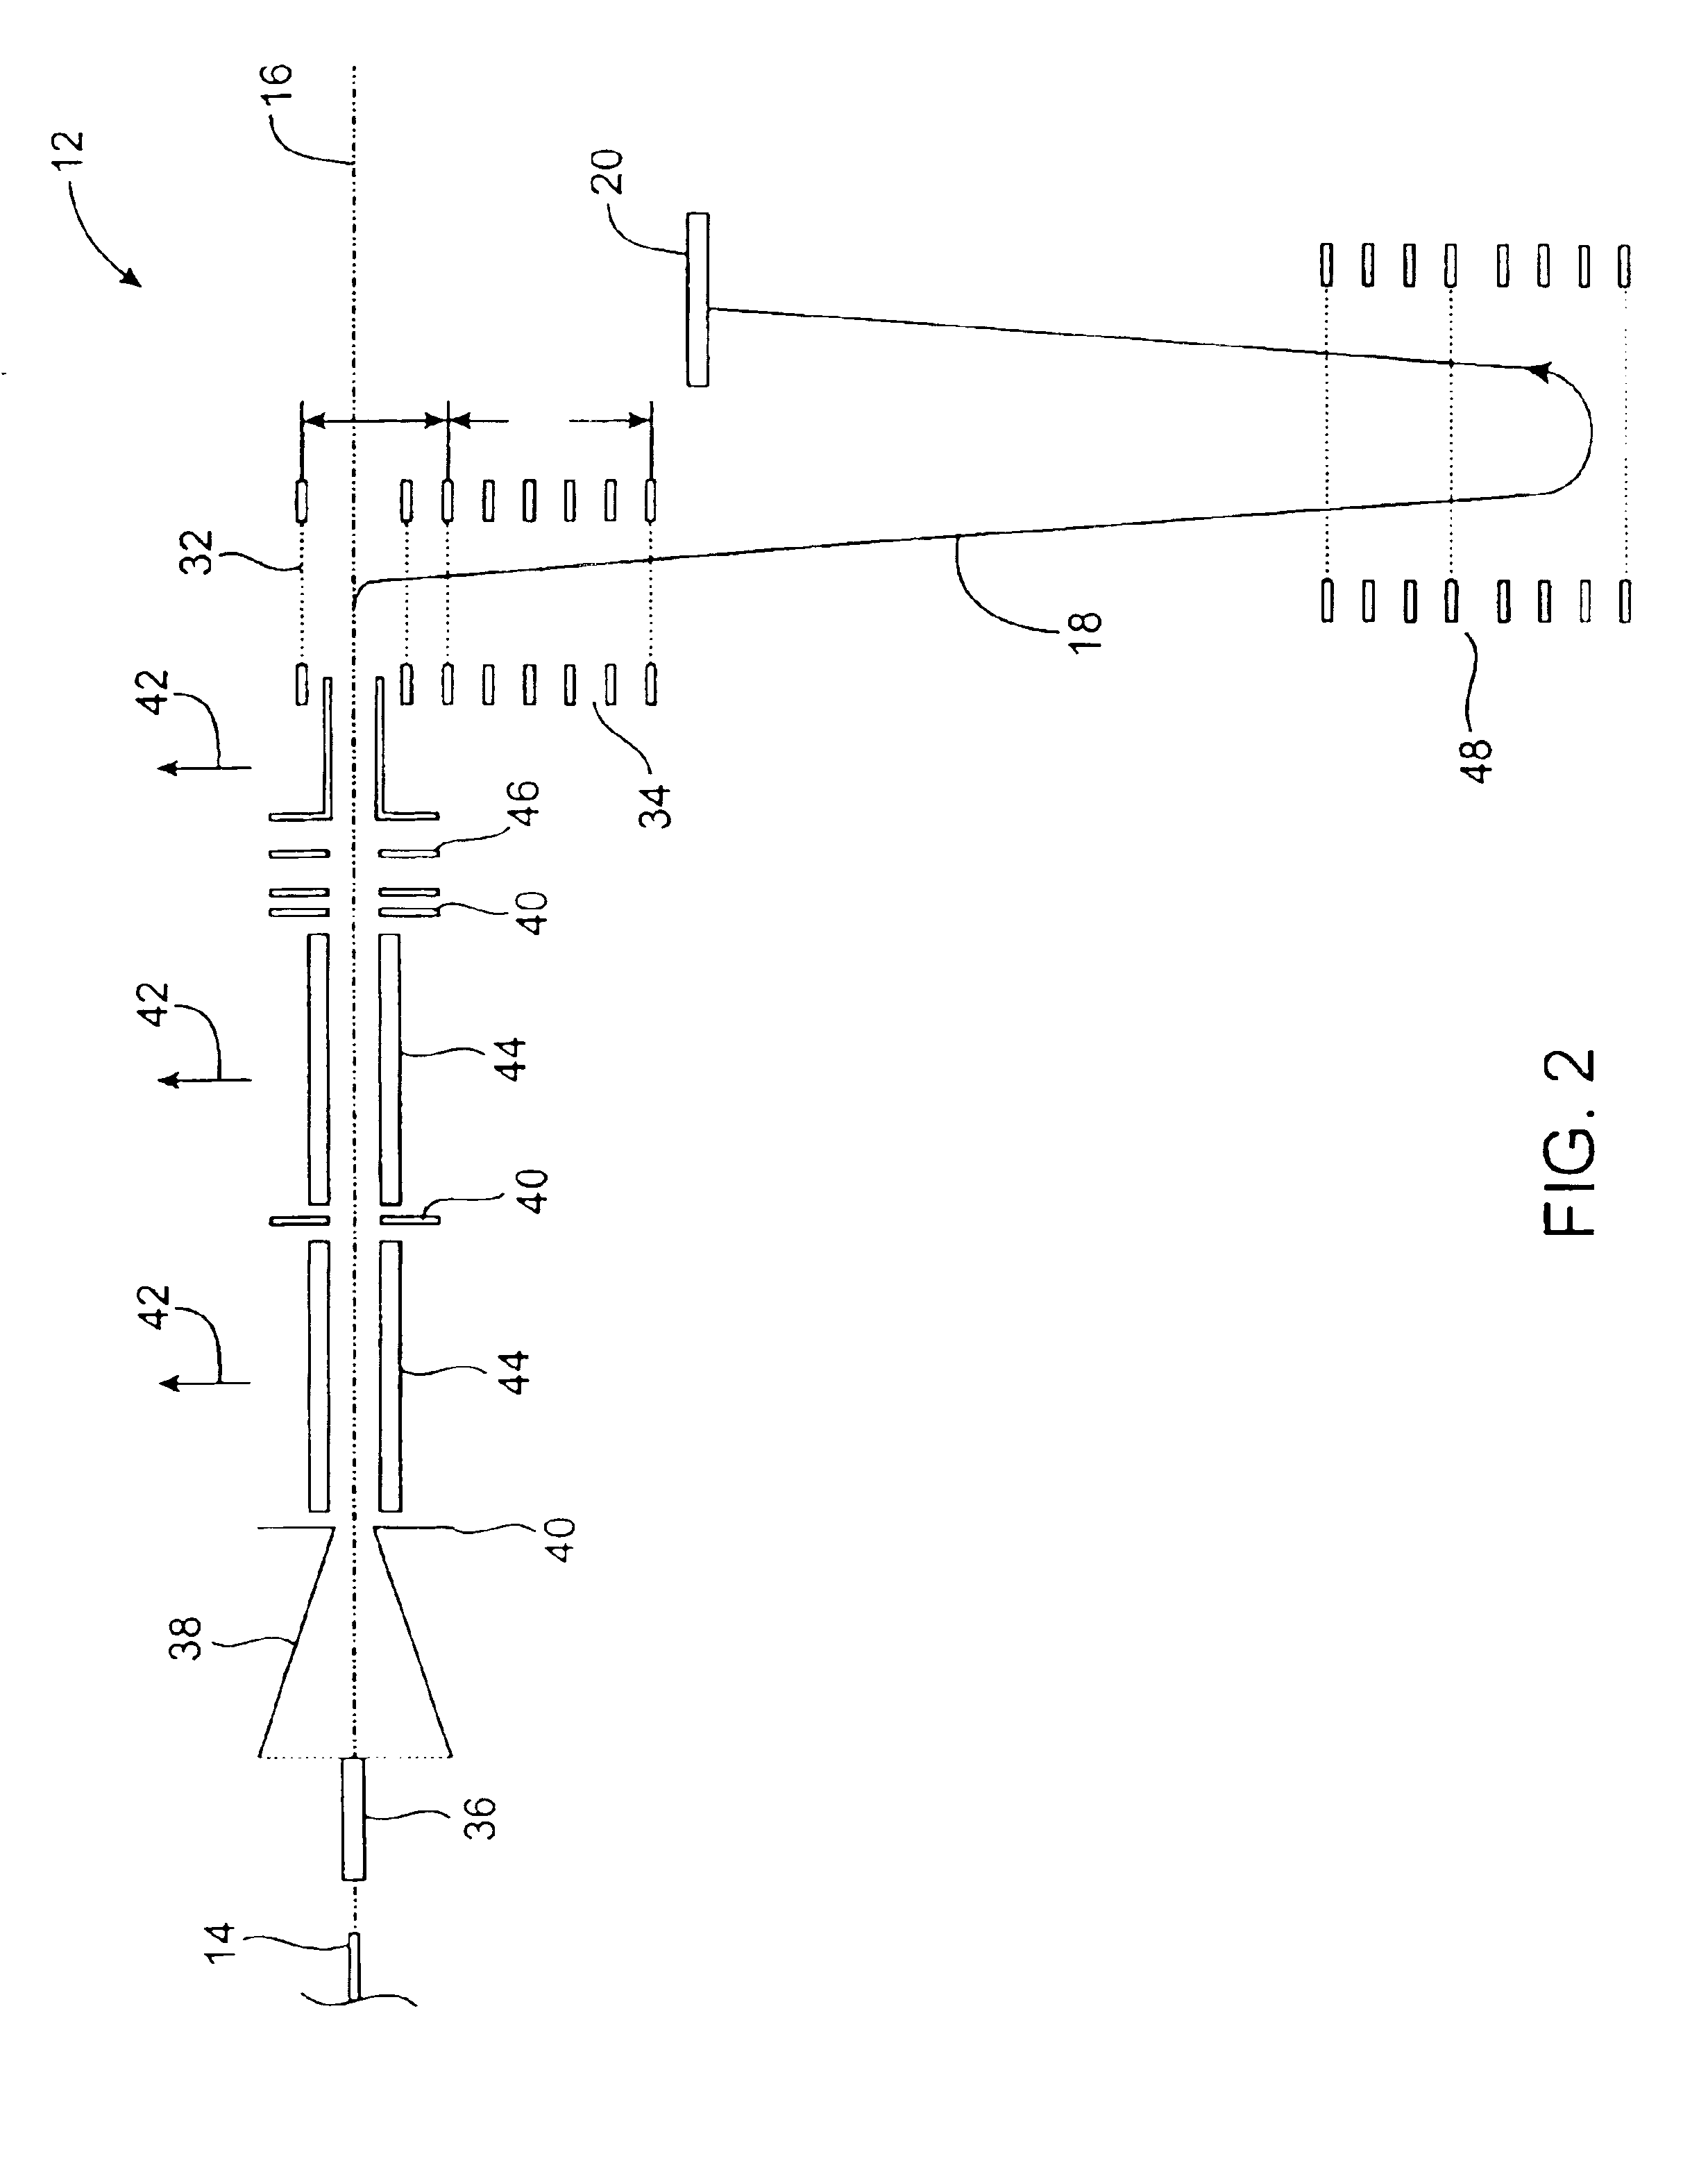 Multiplexed orthogonal time-of-flight mass spectrometer